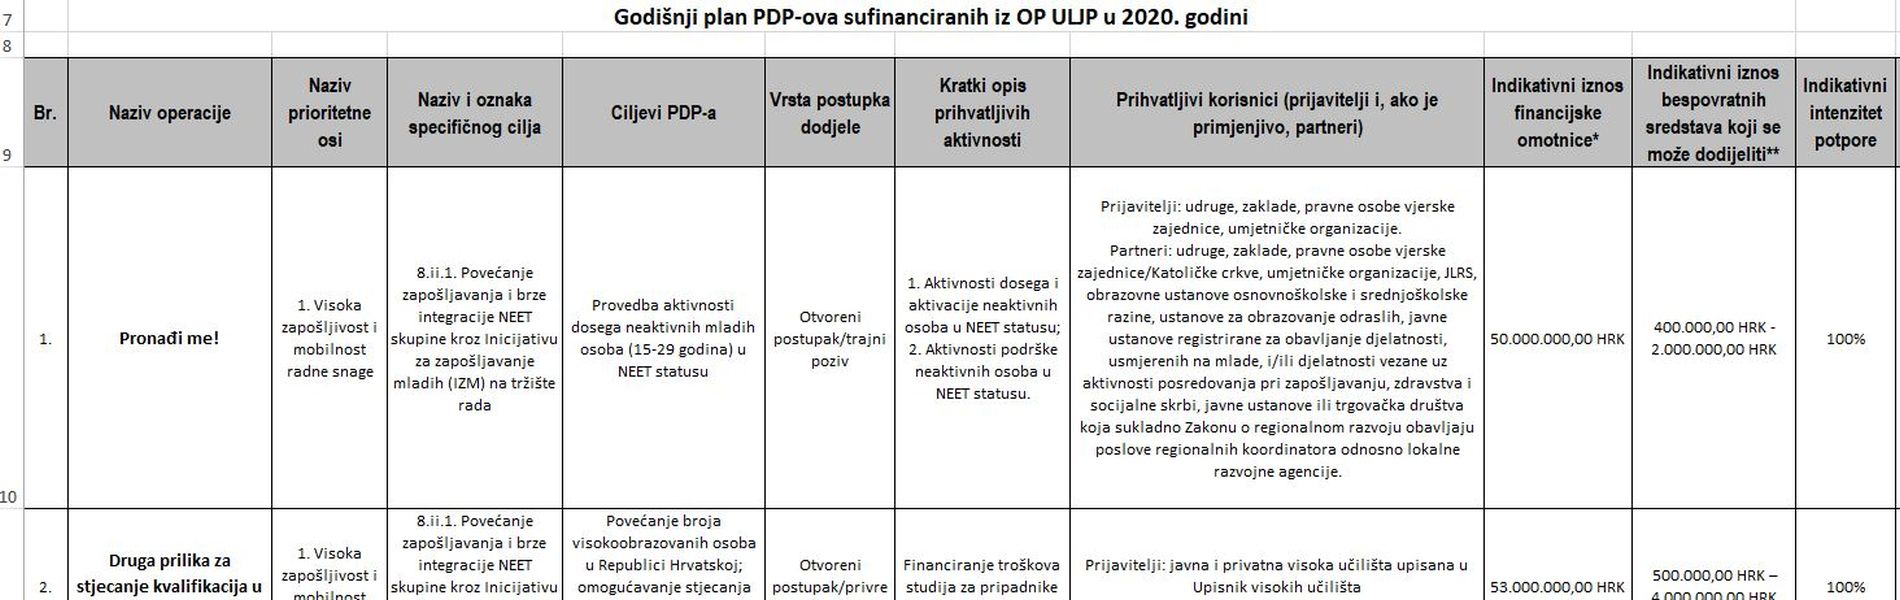 Objavljen godišnji plan objave poziva na dostavu projektnih prijedloga za 2020. godinu